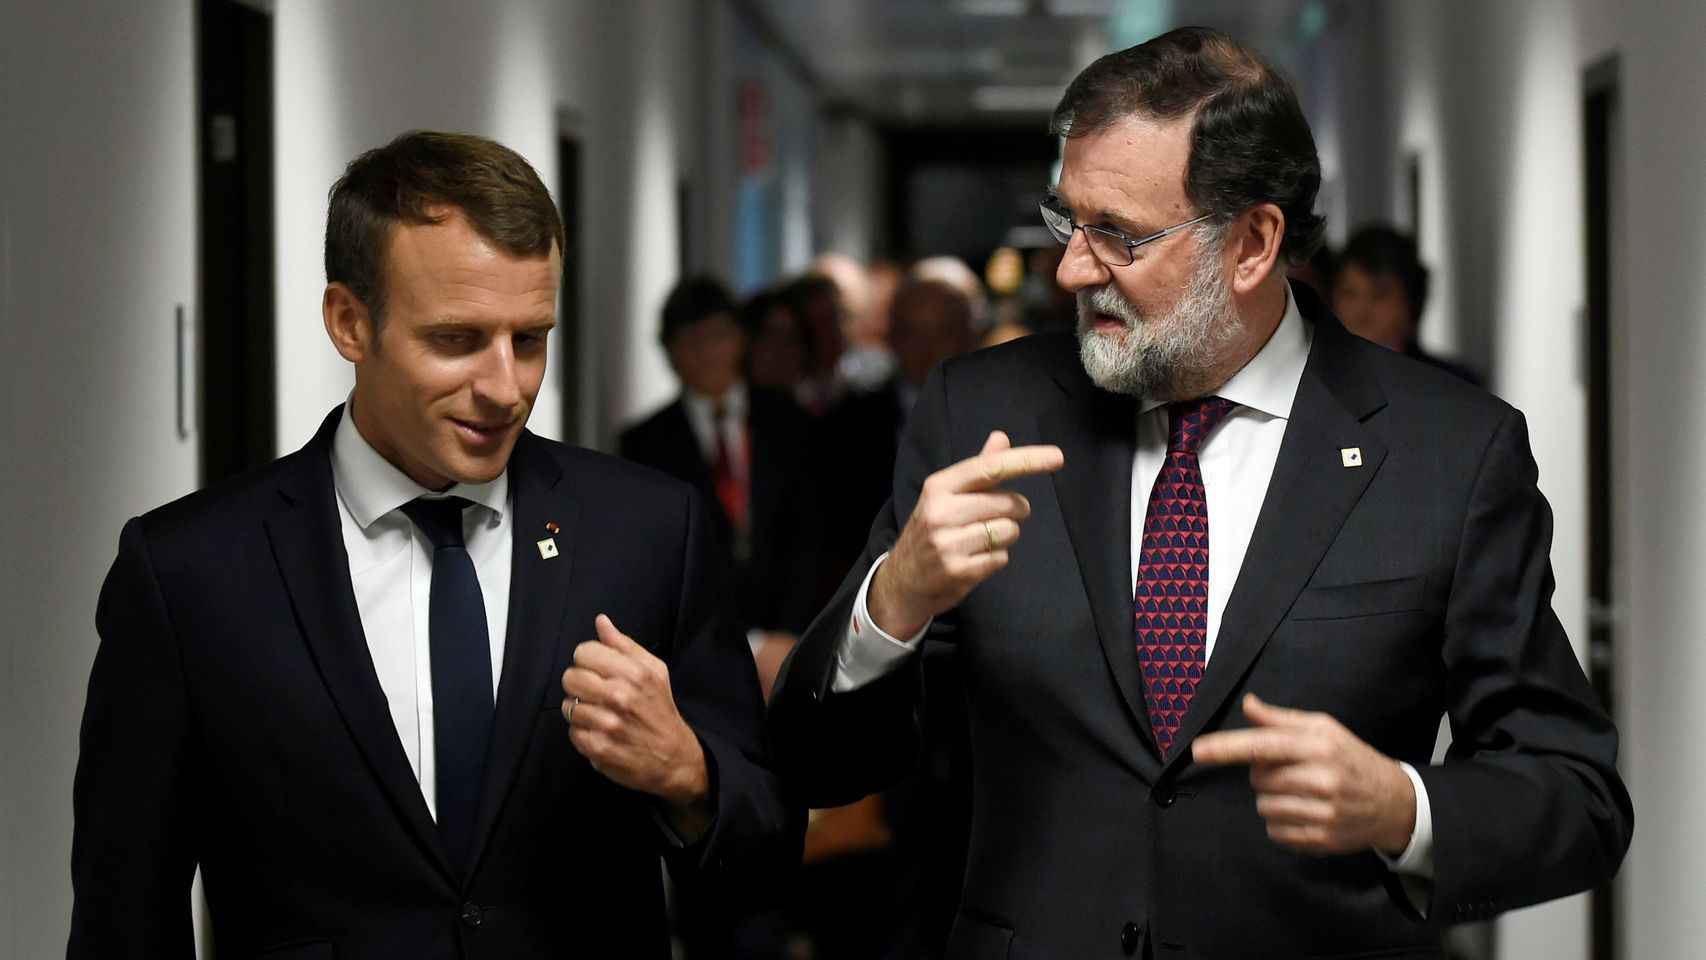 El presidente de Francia, Emmanuel Macron, y el presidente español, Mariano Rajoy, en su encuentro en Bruselas